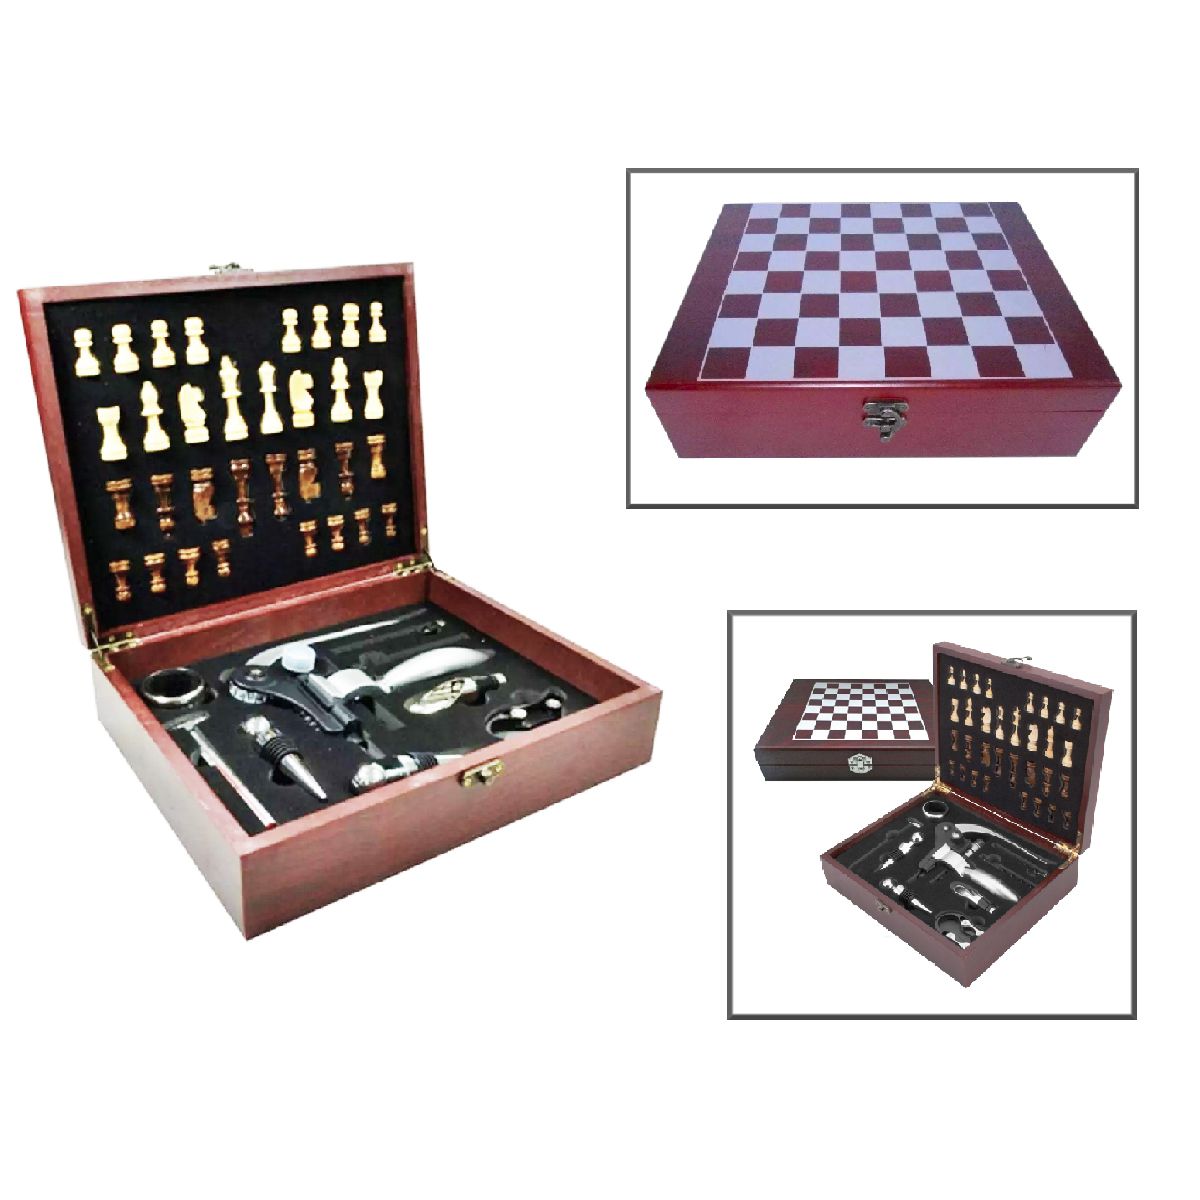 Jogo de xadrez tabuleiro pecas madeira unyhome jg172002